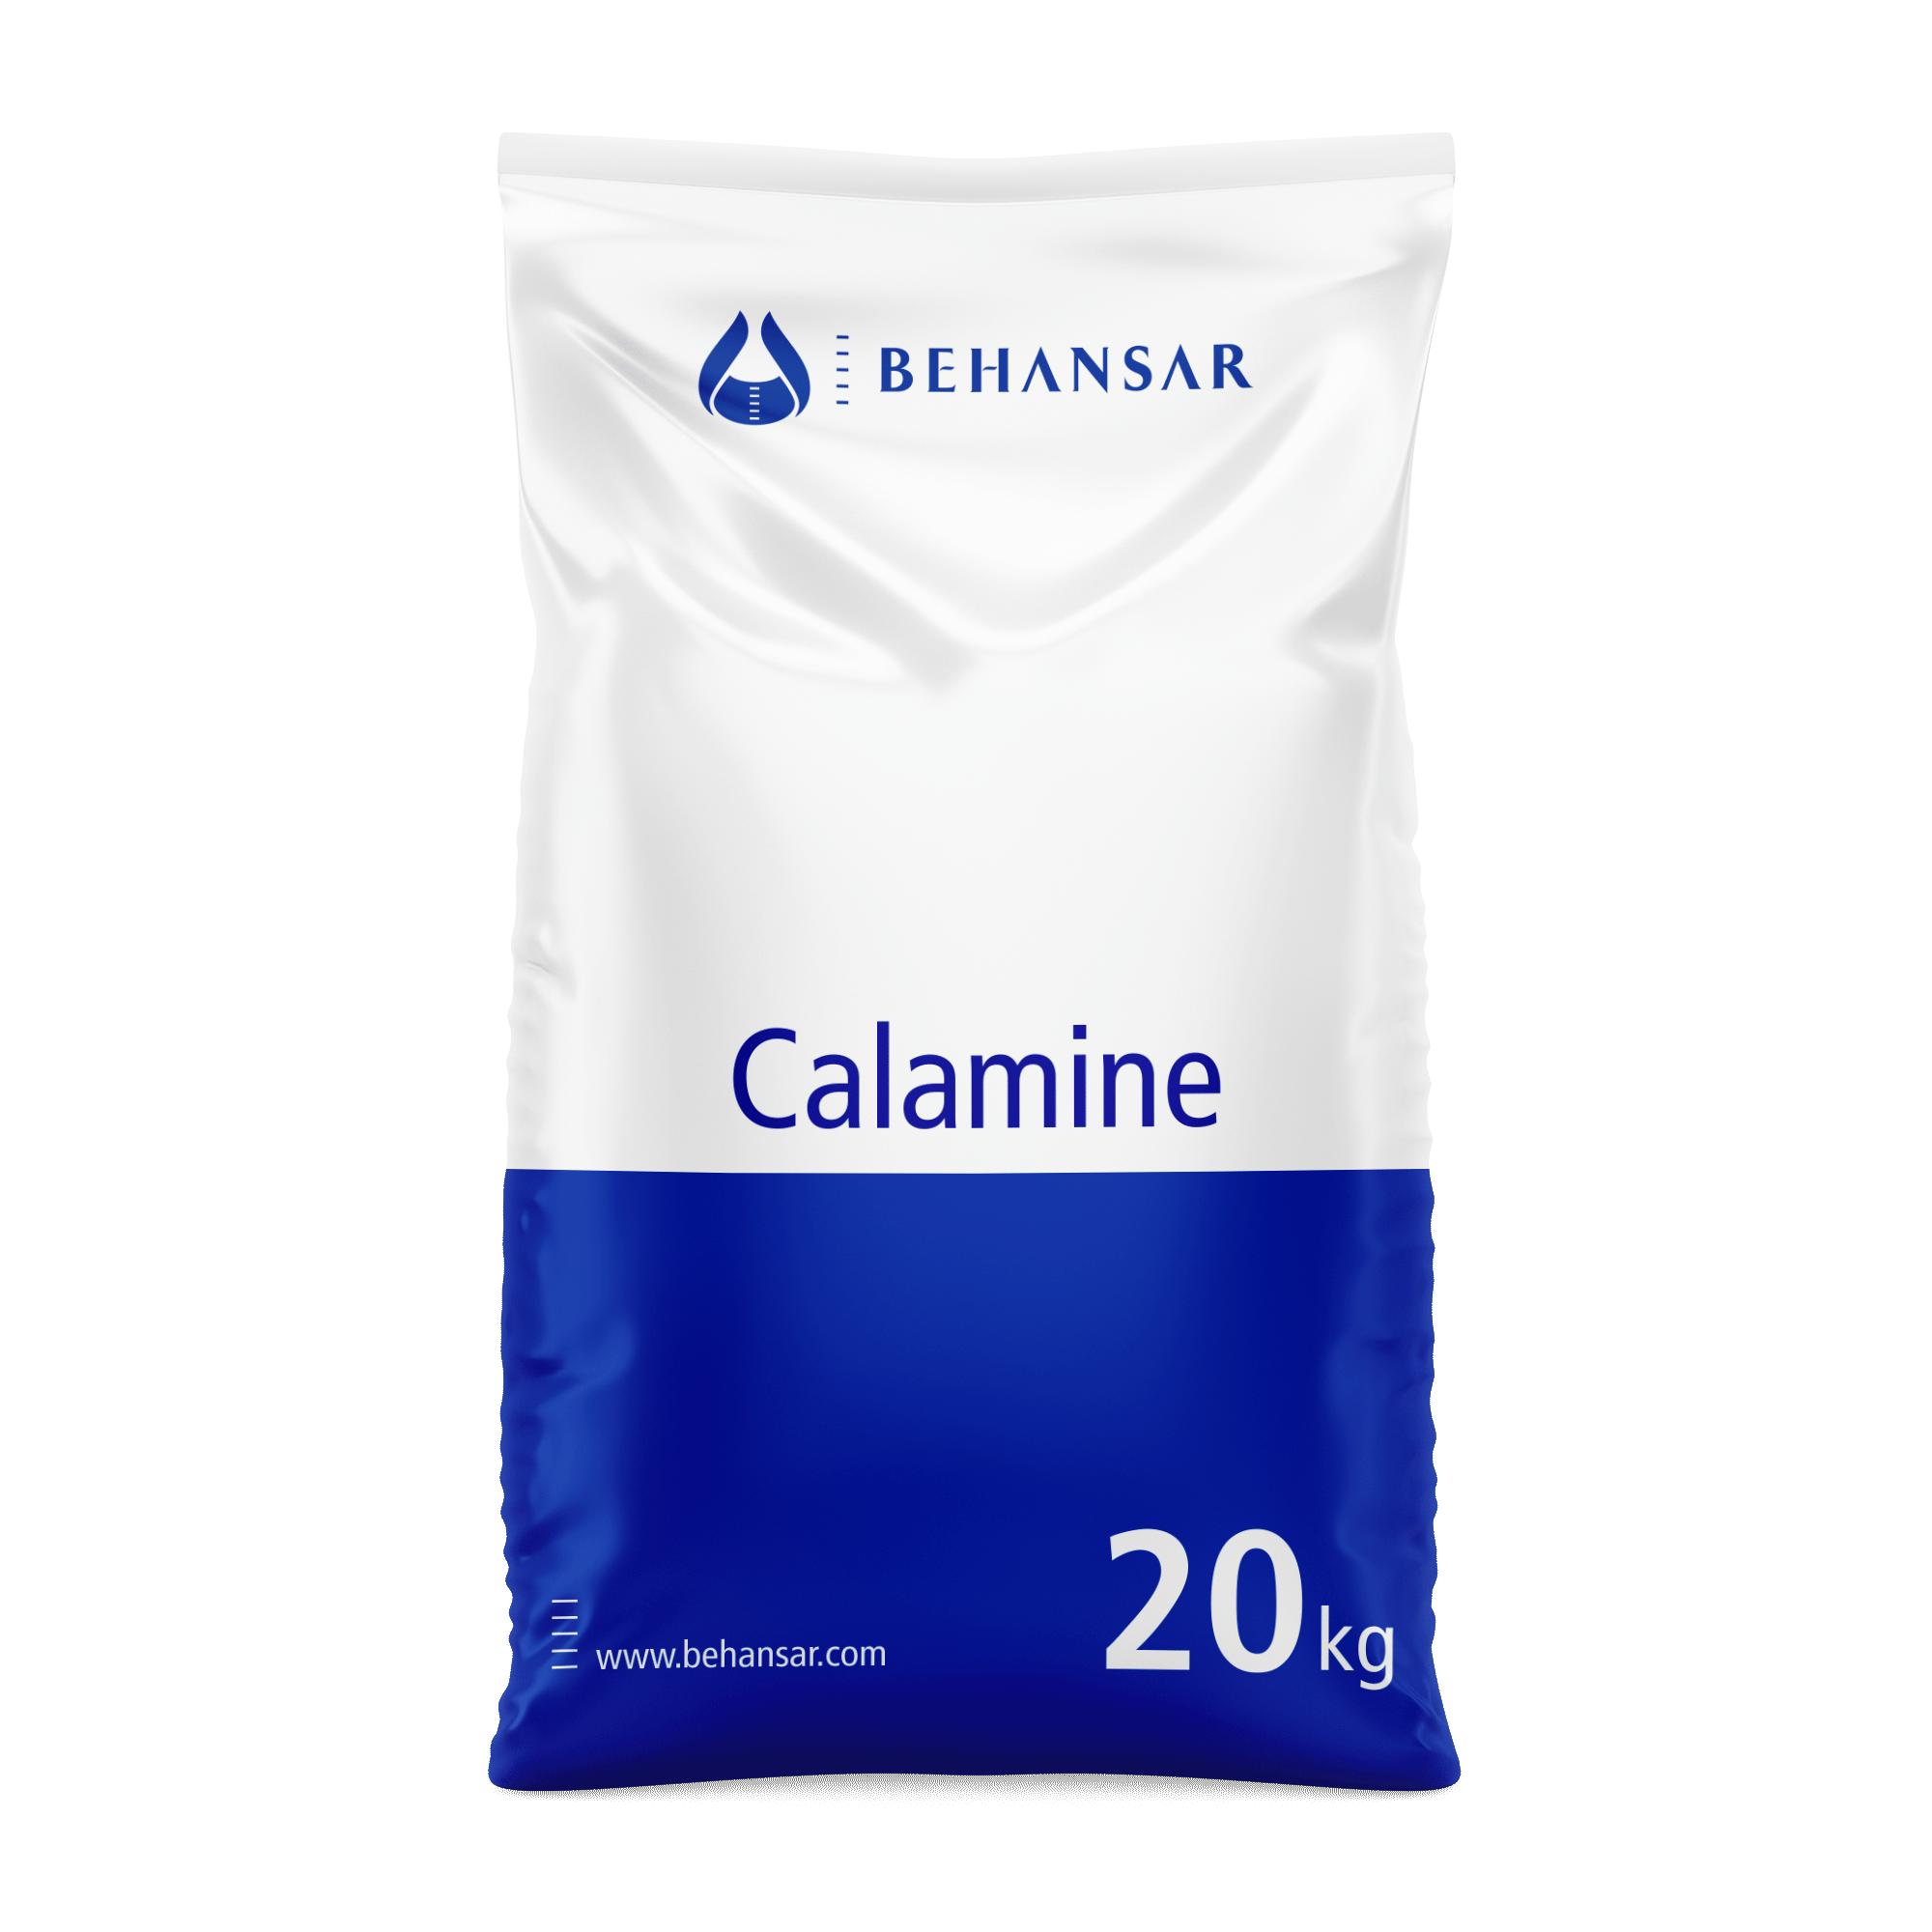 کالامین یکی از تولیدات شرکت بهانسار است